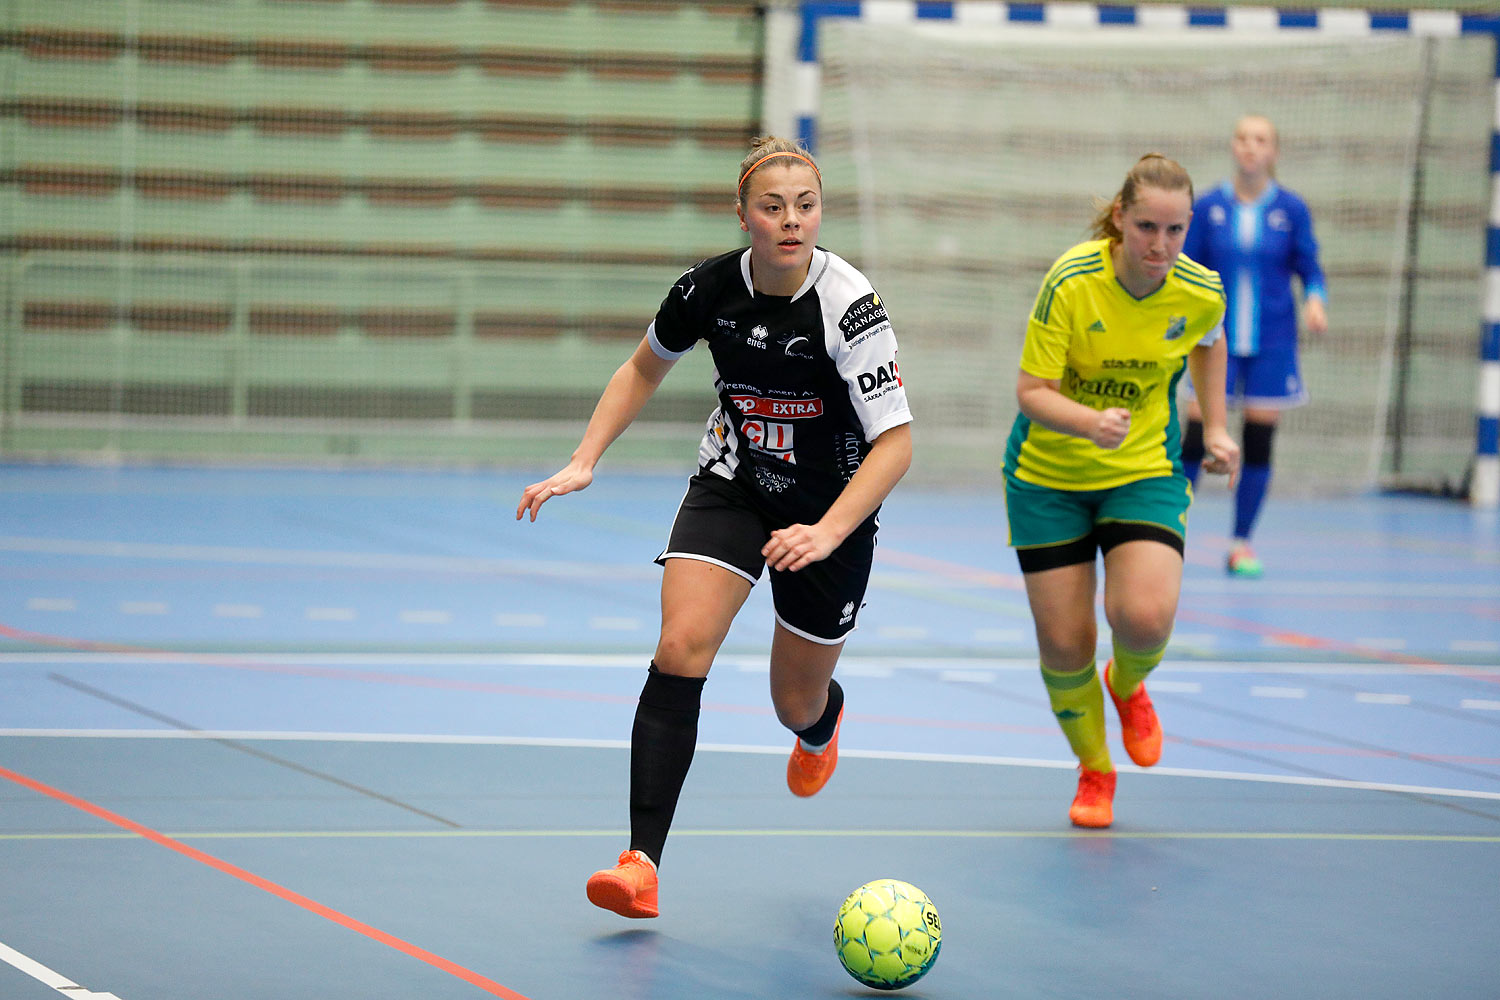 Skövde Futsalcup Damer Hertzöga BK 1-Skövde KIK,dam,Arena Skövde,Skövde,Sverige,Skövde Futsalcup 2016,Futsal,2016,141727